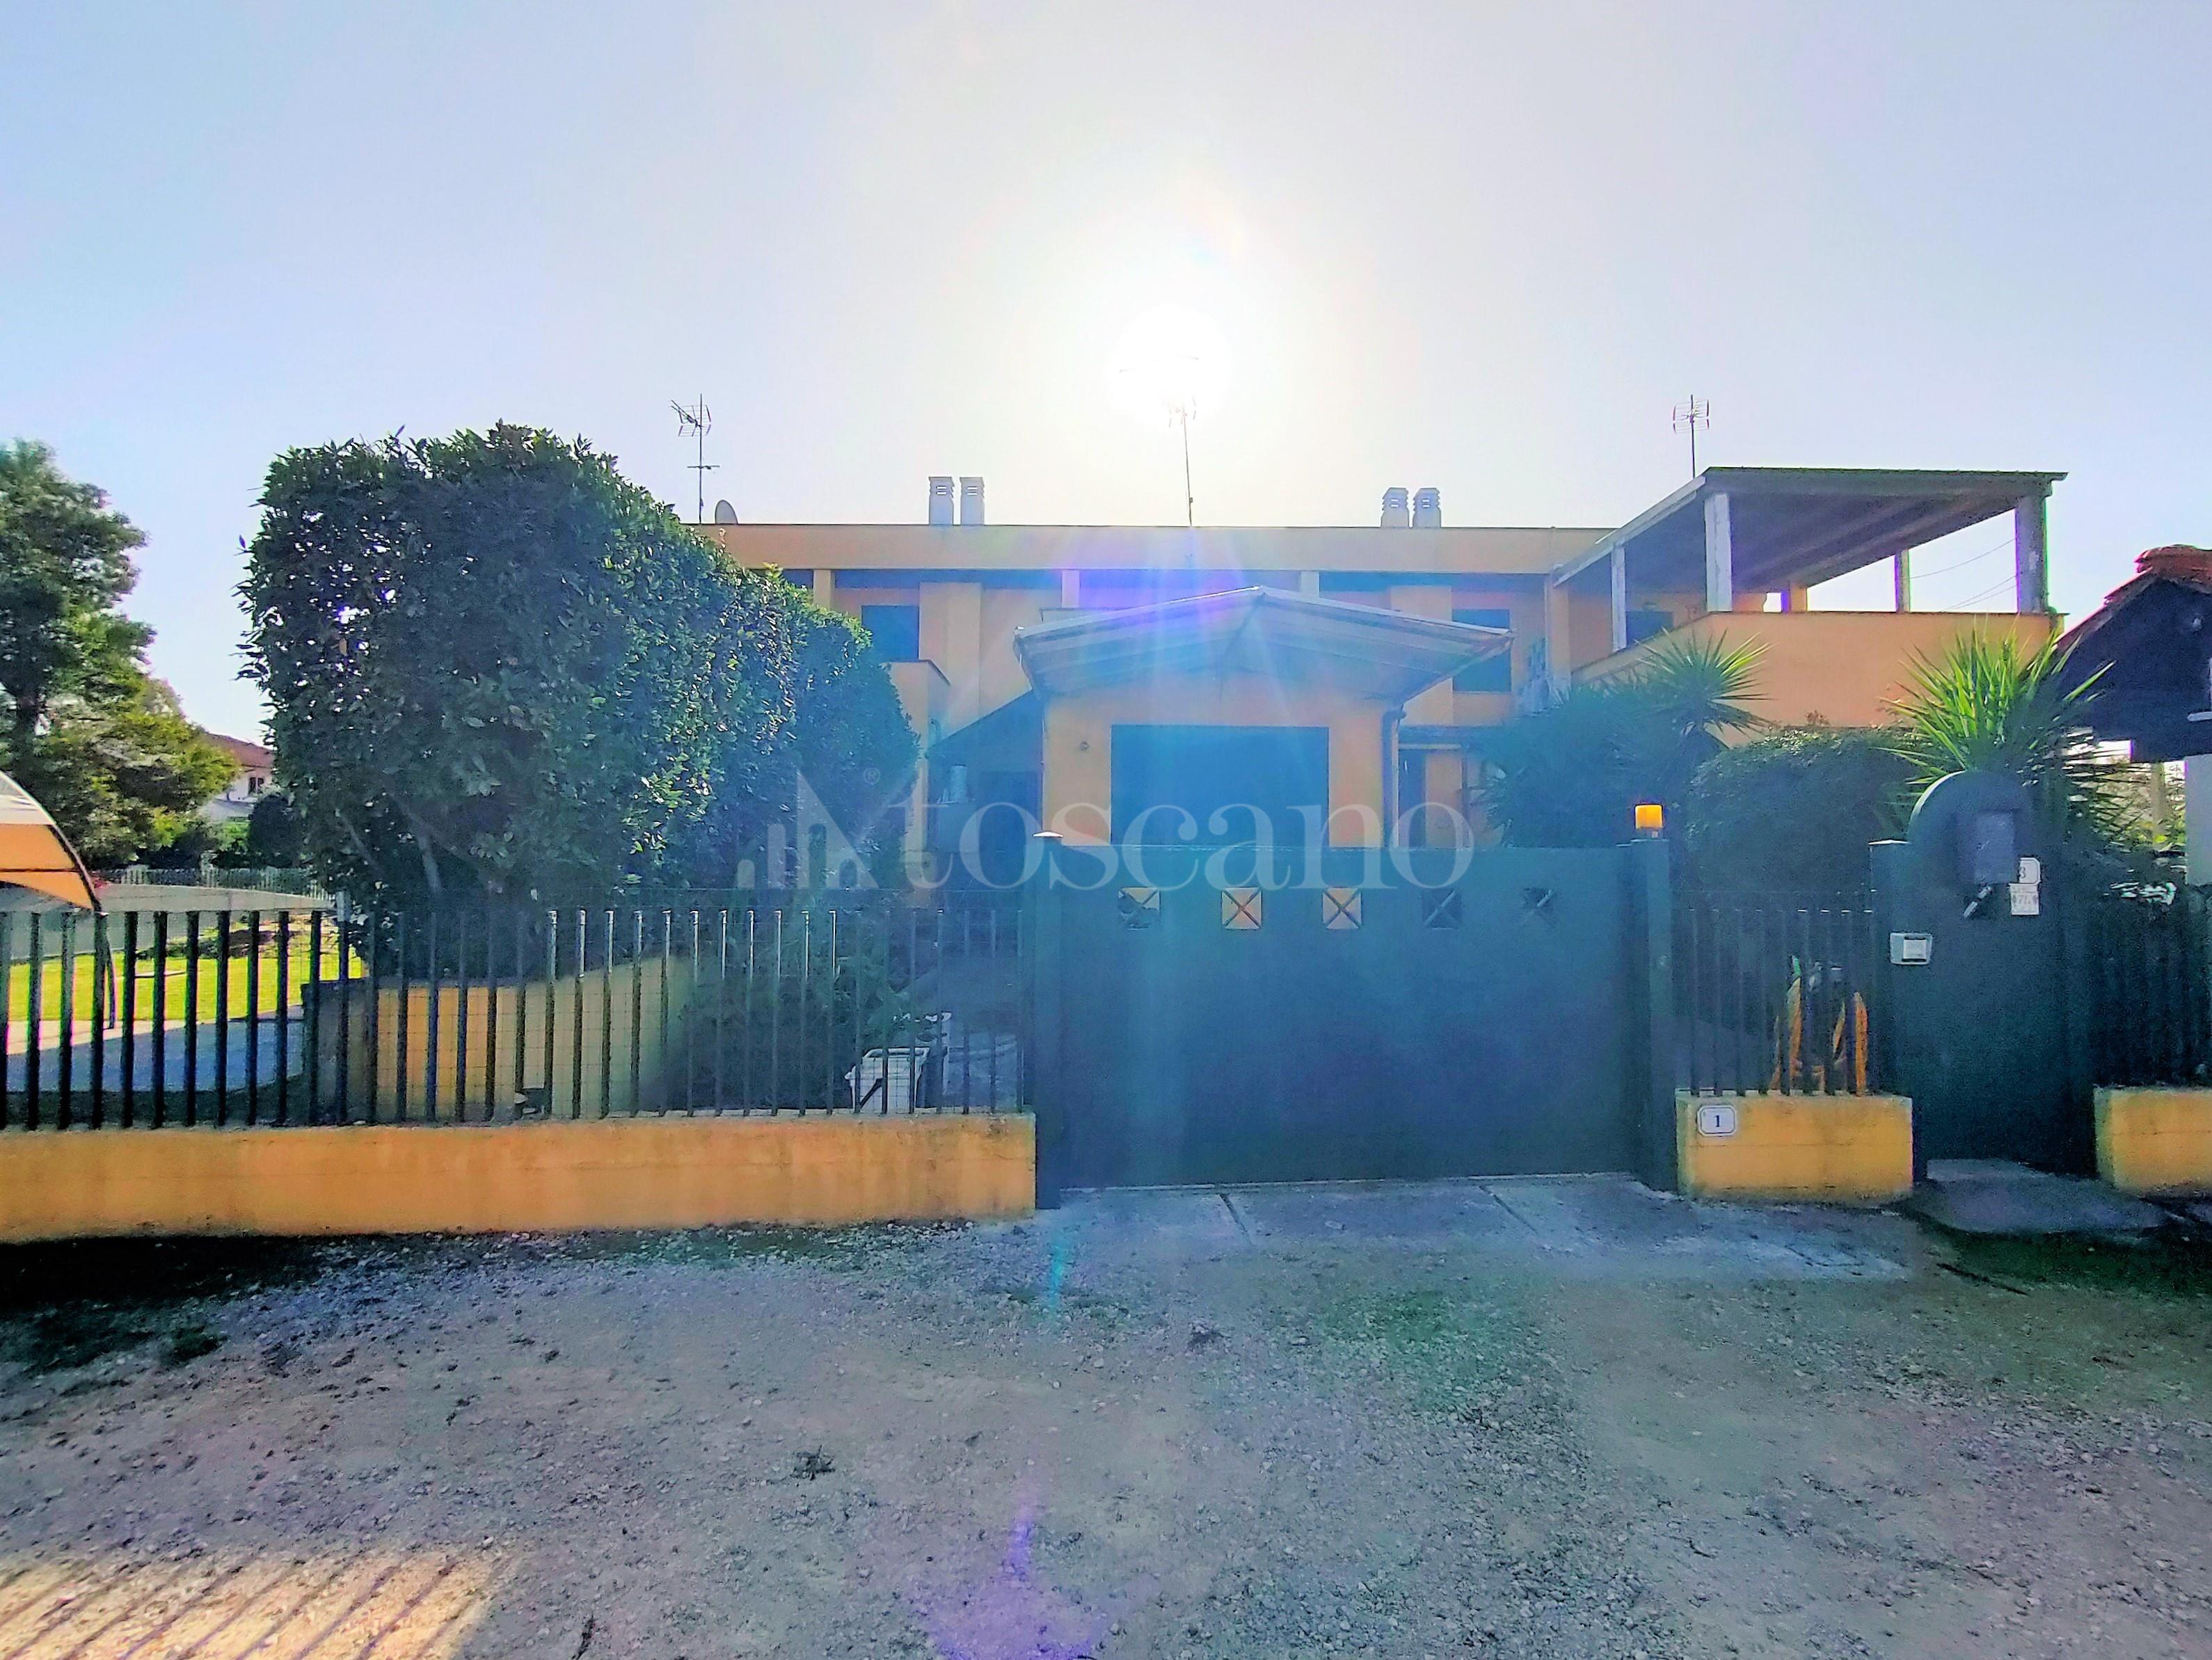 Villa Plurifamiliare a Sabaudia in via magellano 3